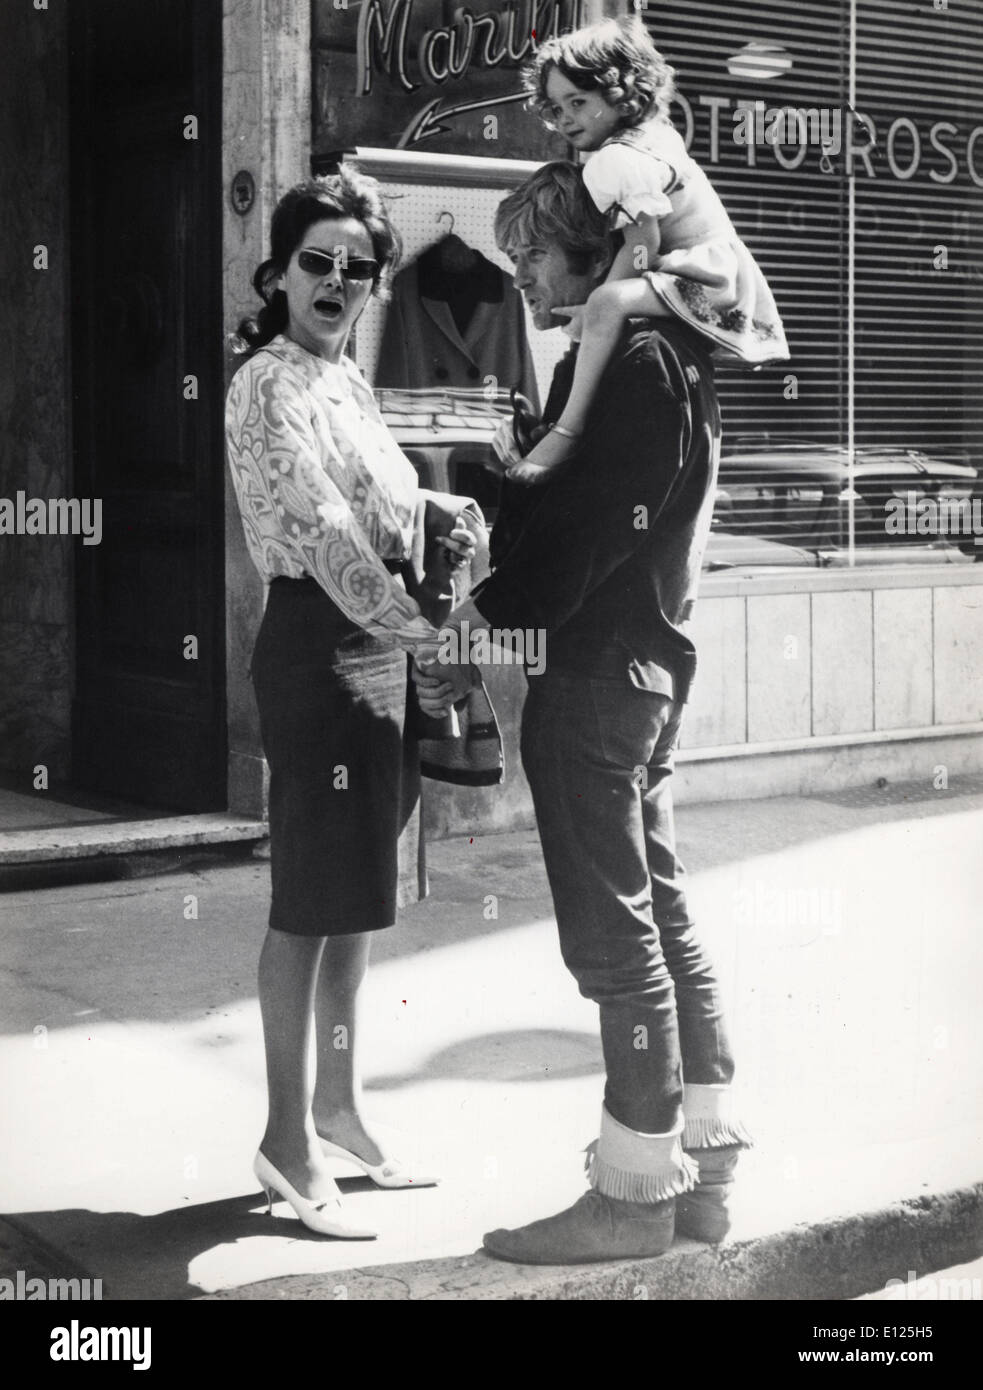 Nov 29, 2004; Los Angeles, CA, Stati Uniti d'America; File Foto: 1965 con sua moglie GABY PALAZZOLO e sua figlia in Italia. Attore JOHN D. BARRYMORE noto per la sua acqua potabile, il consumo di droga e i comportamenti abusivi e il padre assente del film di star Drew Barrymore, è morto oggi a Los Angeles. Egli è stato 72. JOHN D. BARRYMORE è nato a Beverly Hills il 4 giugno 1932. Sua madre è stata attrice Dolores Costello. Ha iniziato la sua carriera mentre un adolescente, apparendo professionalmente prima come John Barrymore Jr e poi come John Drew Barrymore Foto Stock